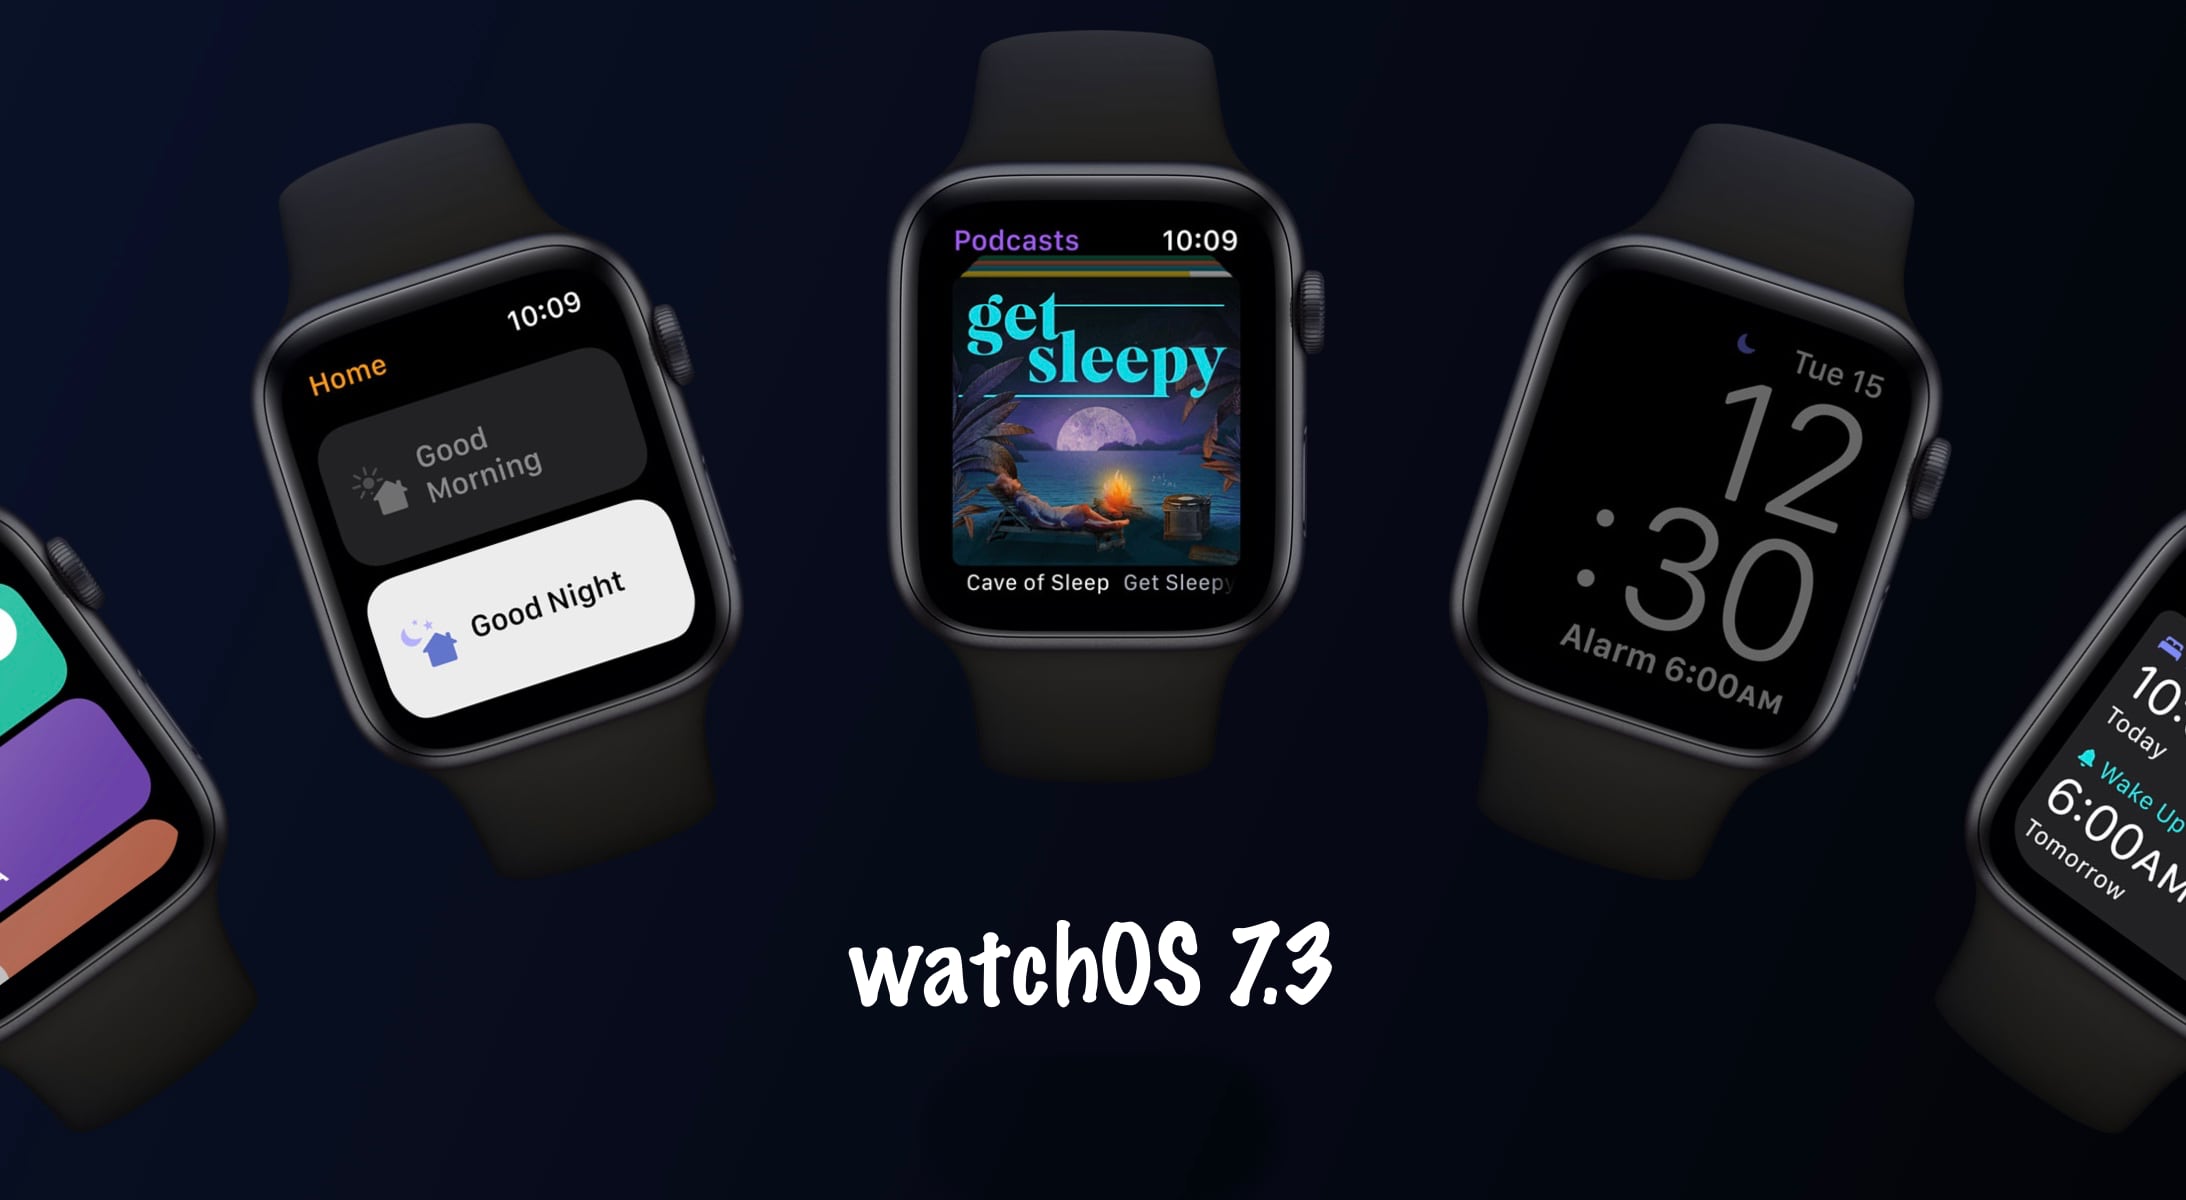 watchOS 7.3